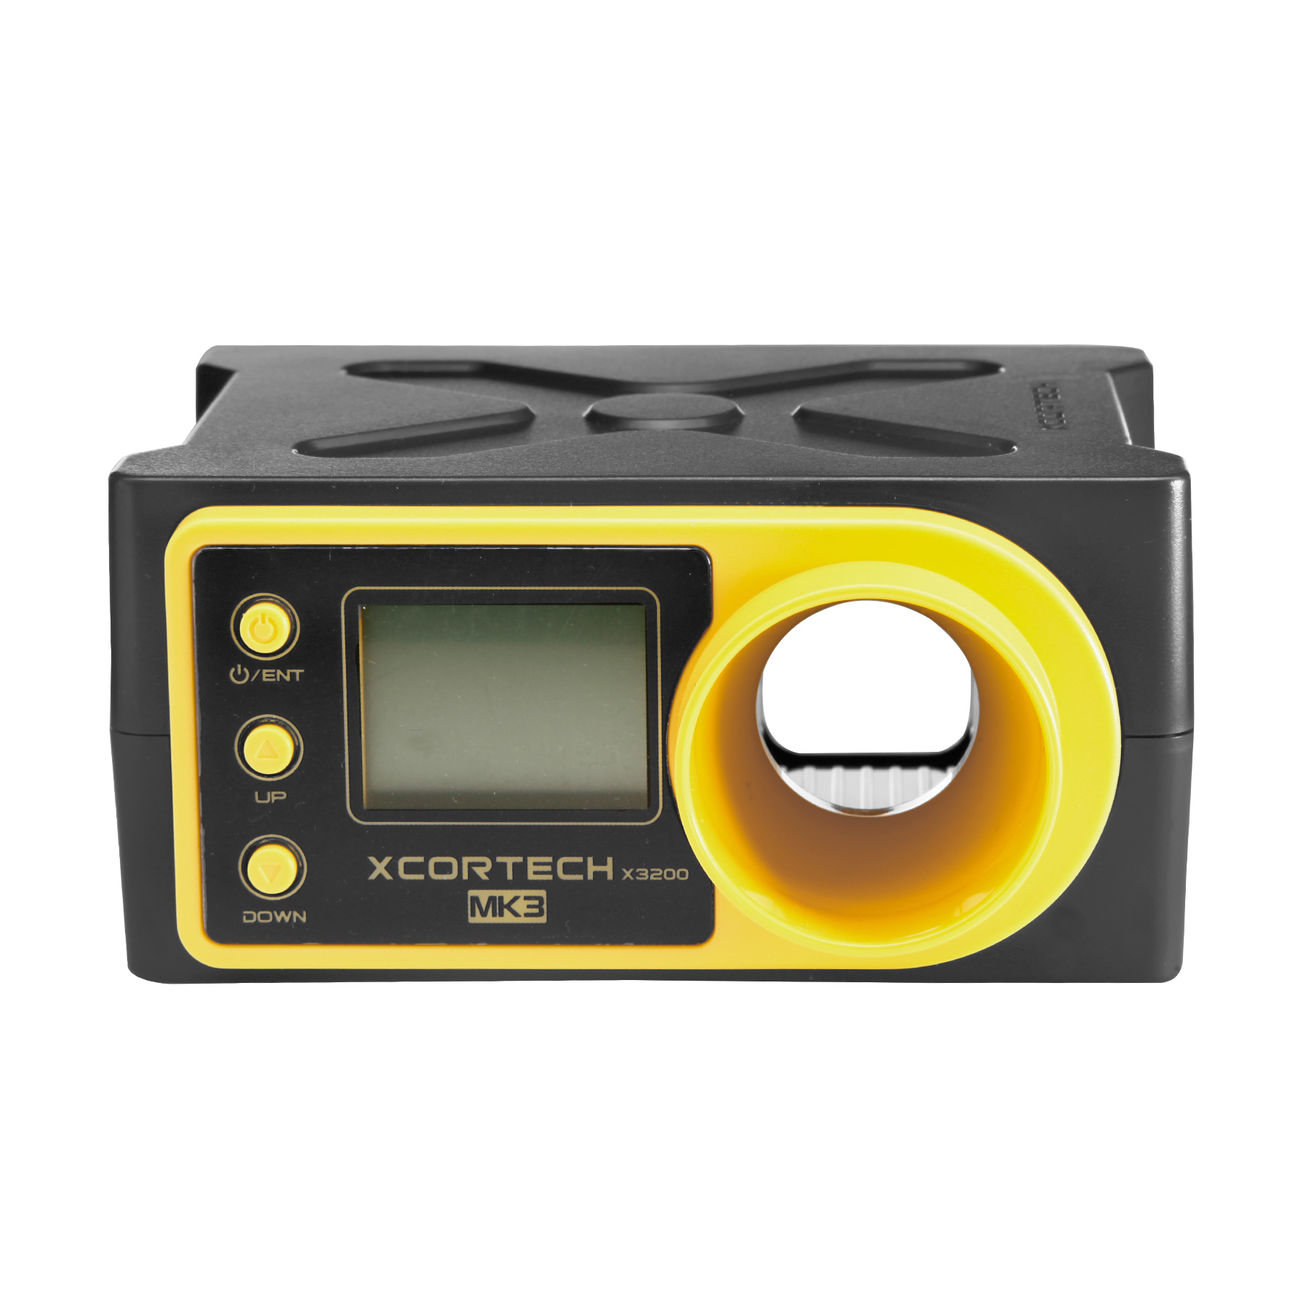 Xcortech X3200 MK3 Shooting Chronograph f. Airsoft gelb / schwarz Bild 1